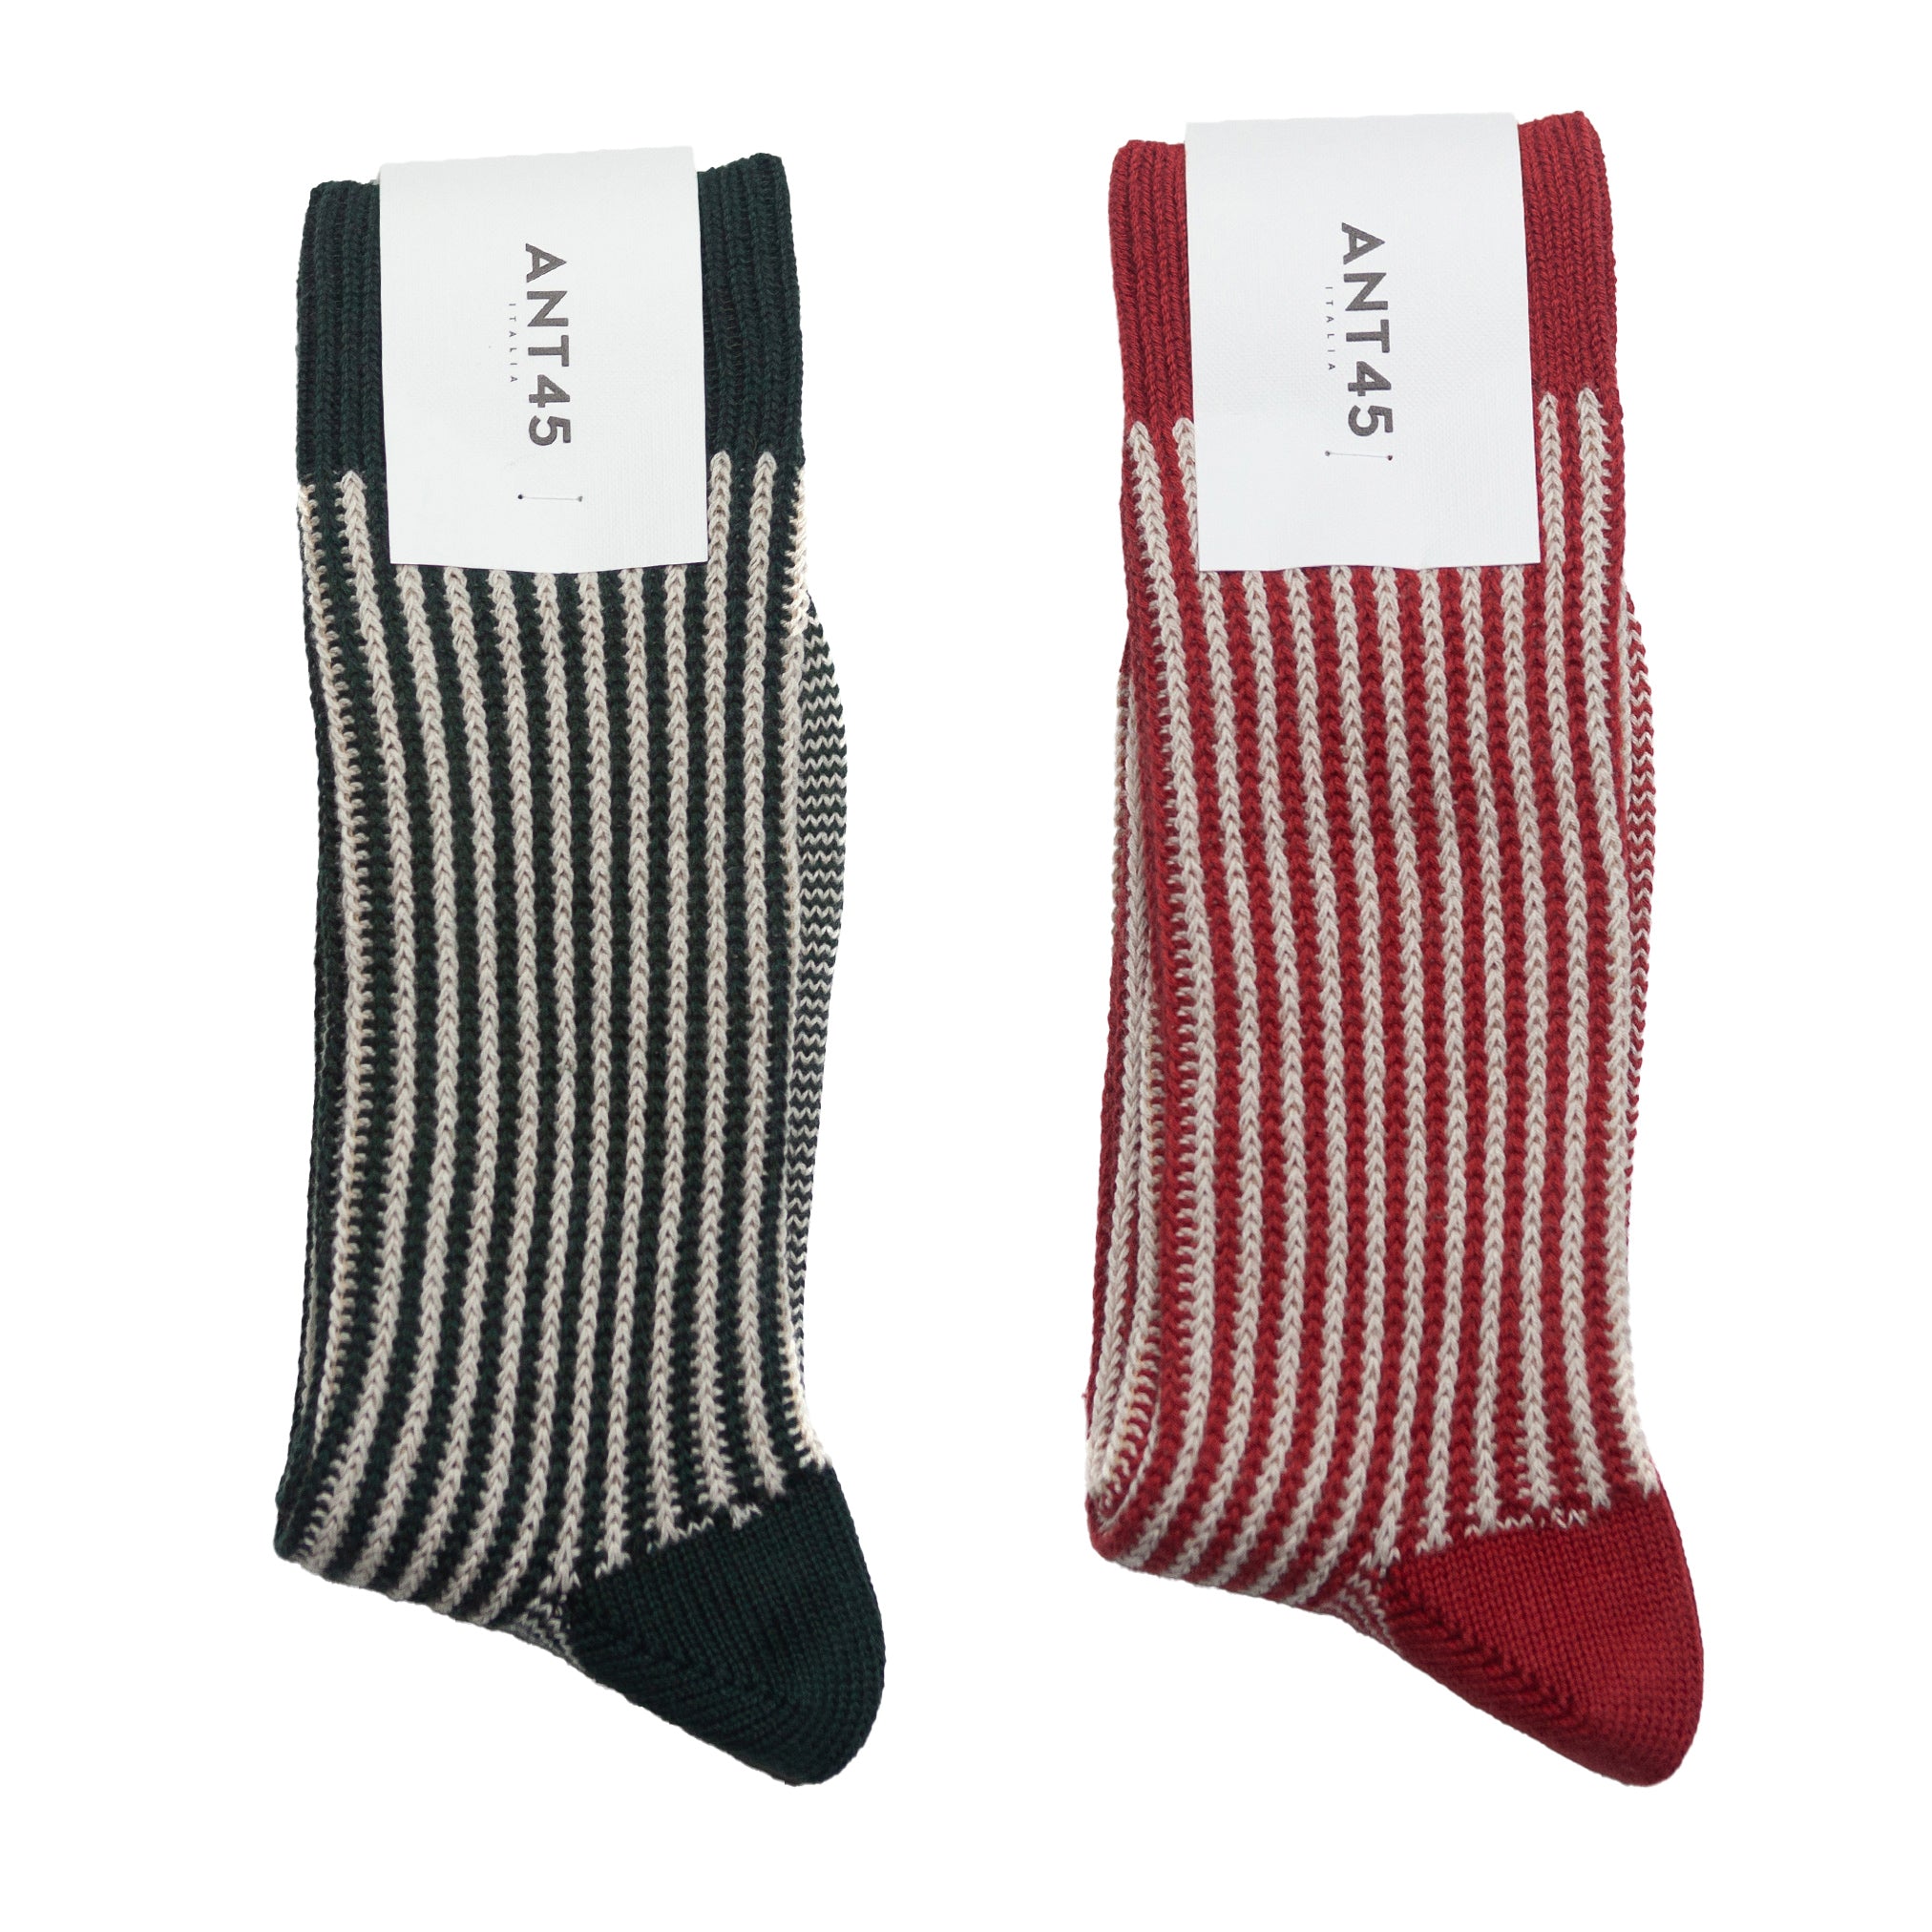 Capri Sock Bundle - Red & Green